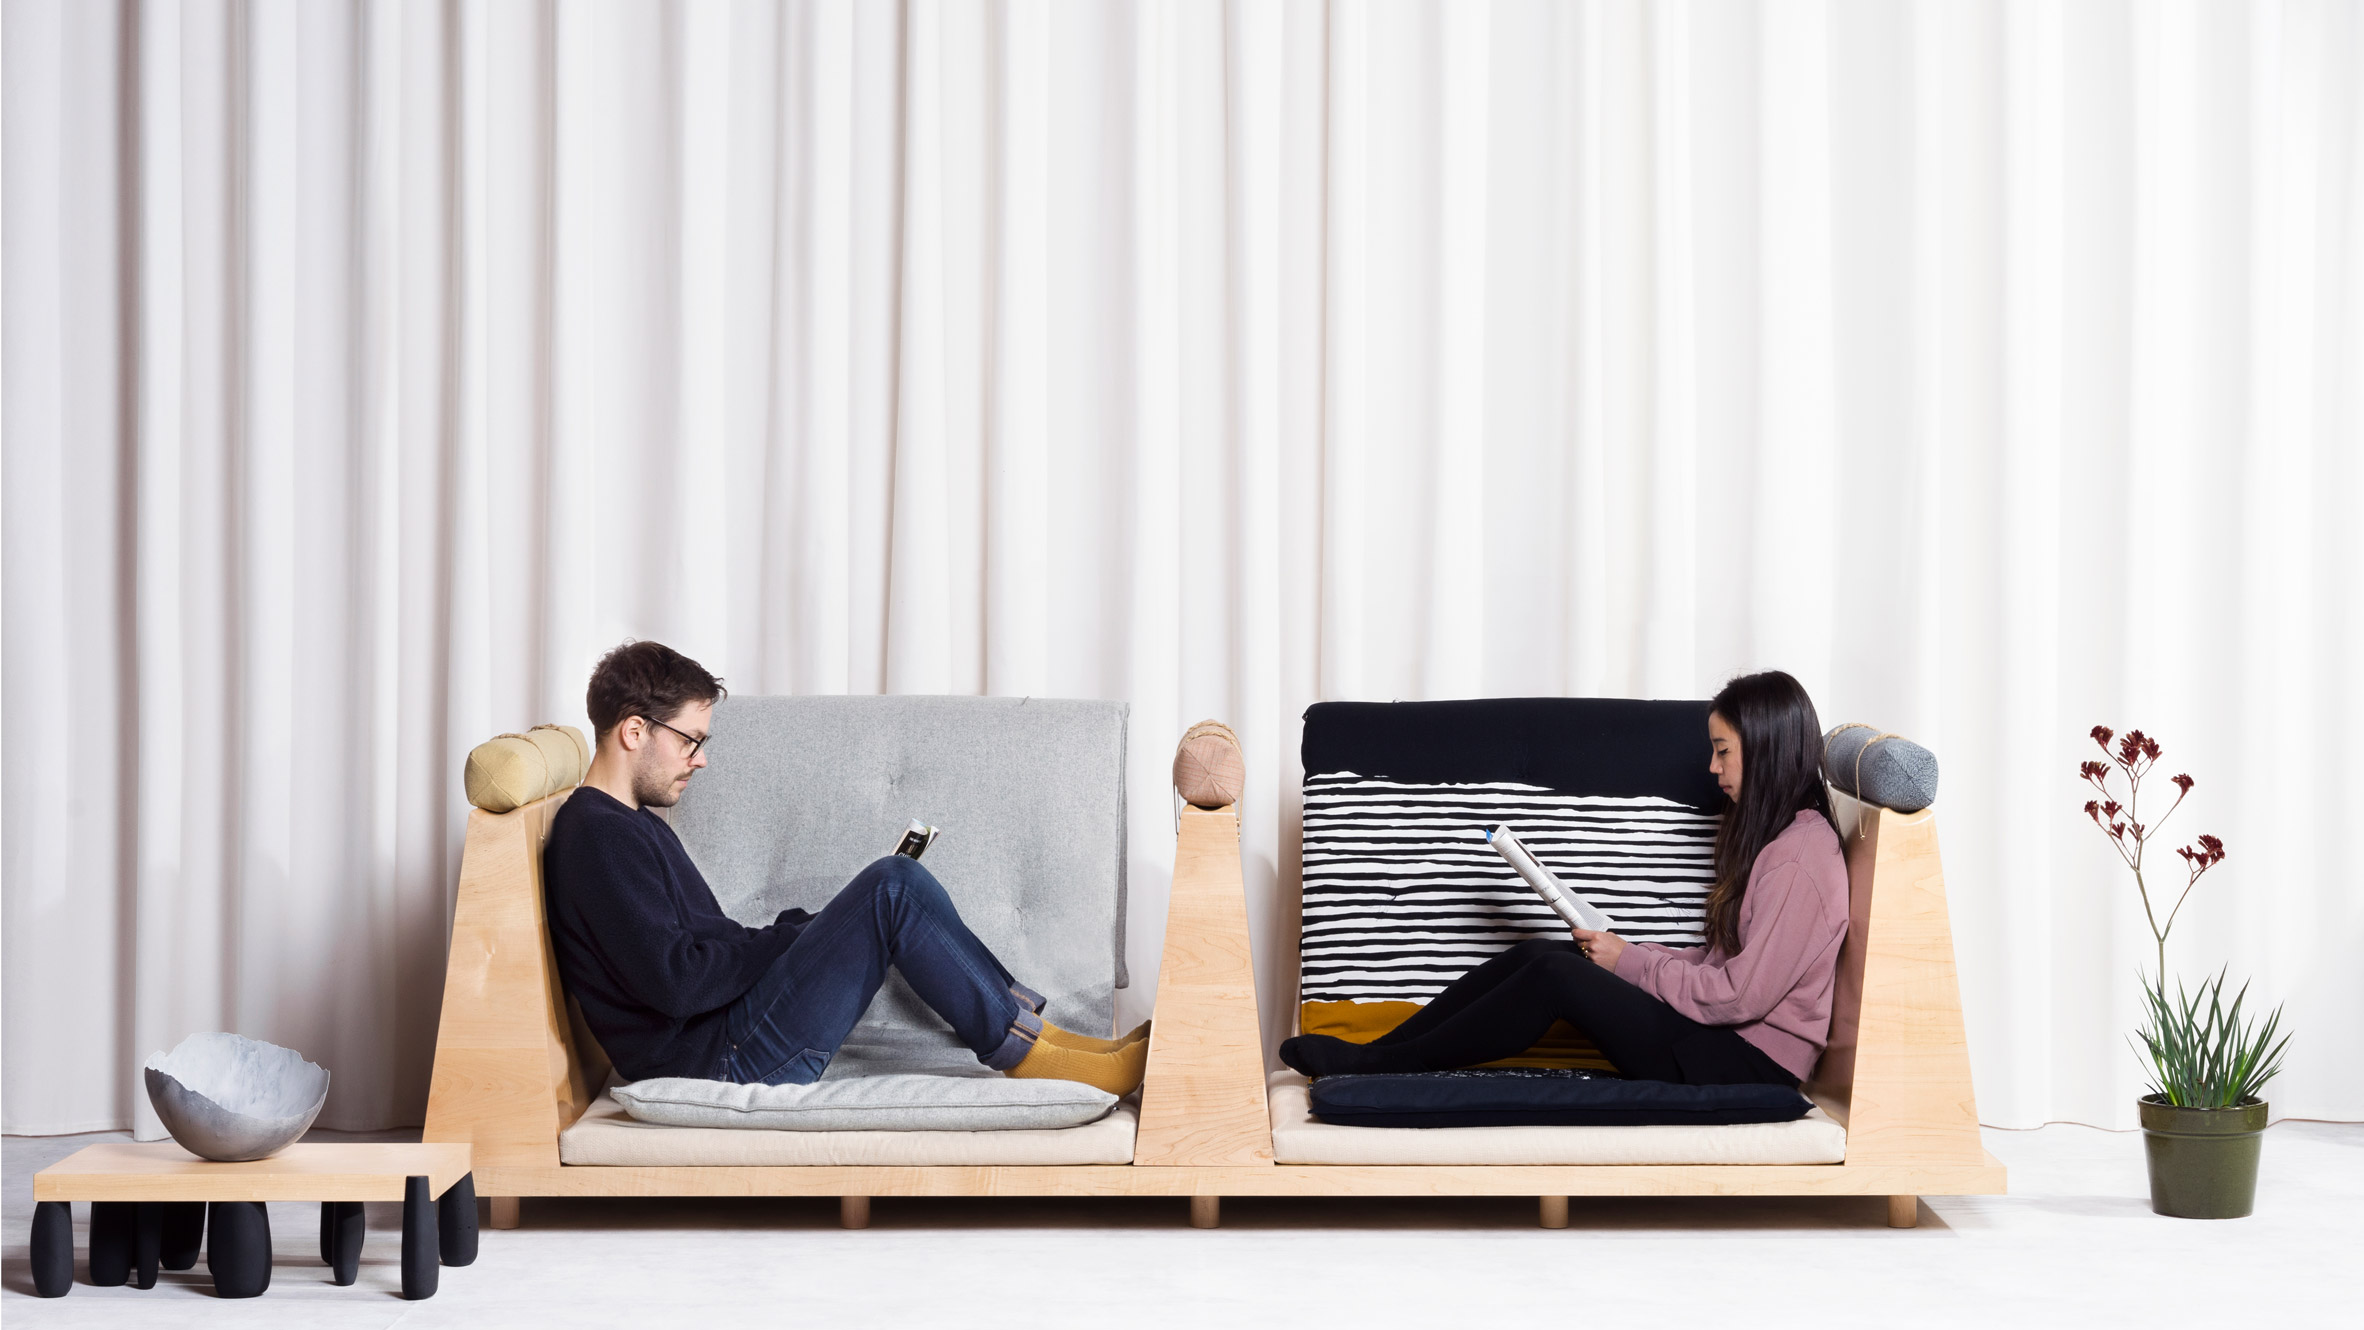 Zabuton Sofa by Ume Studio